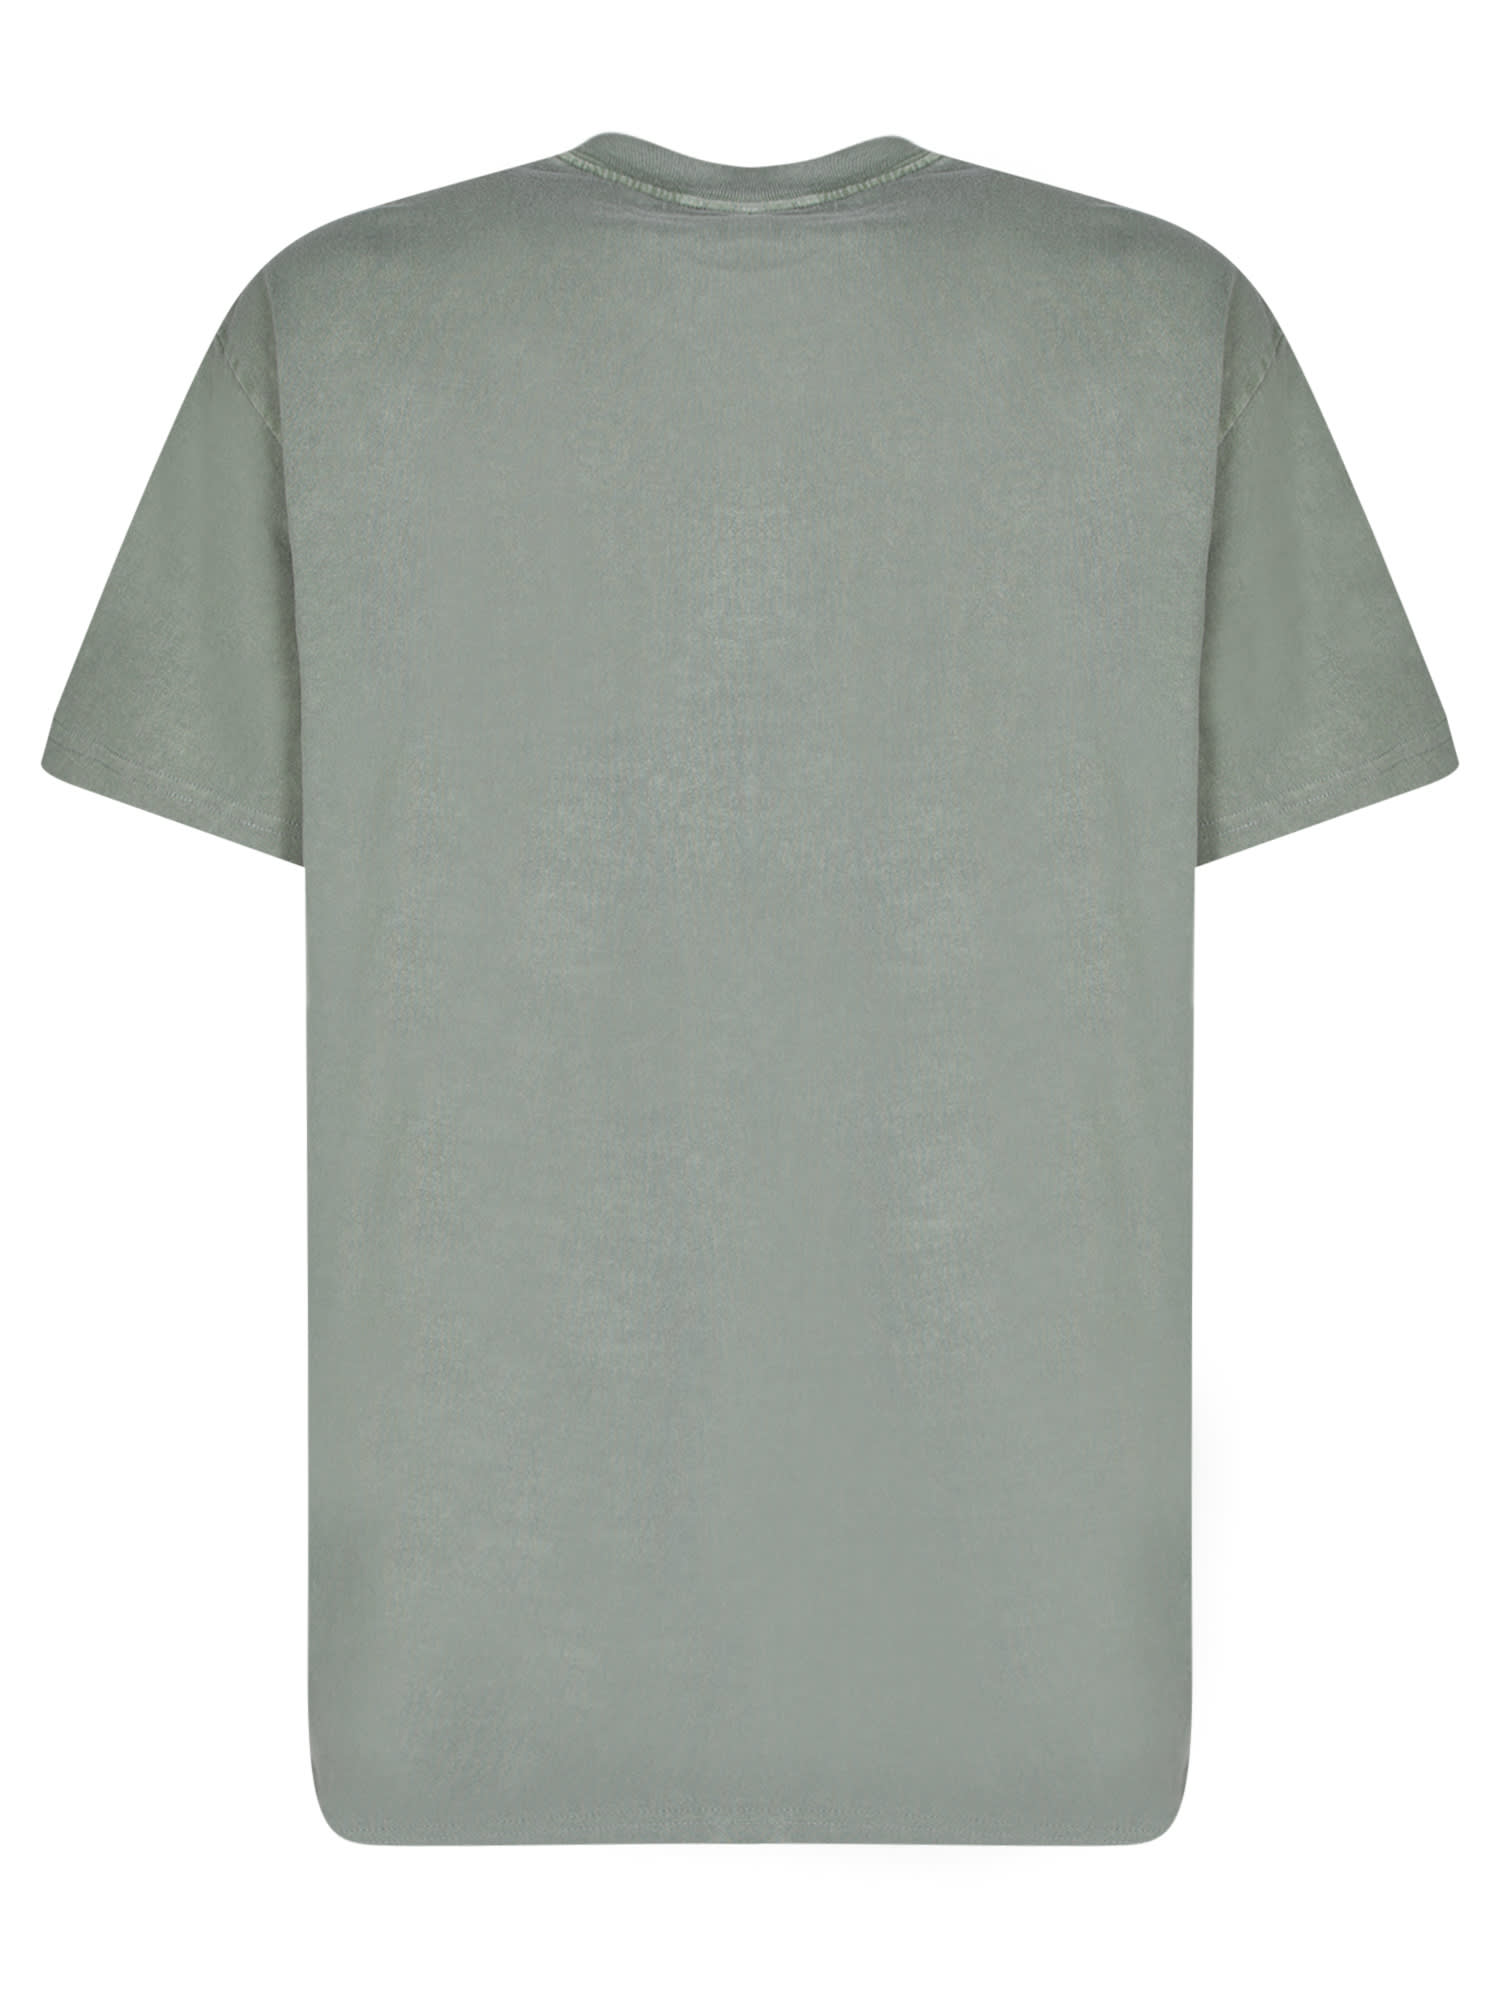 Shop Carhartt Duster Green T-shirt